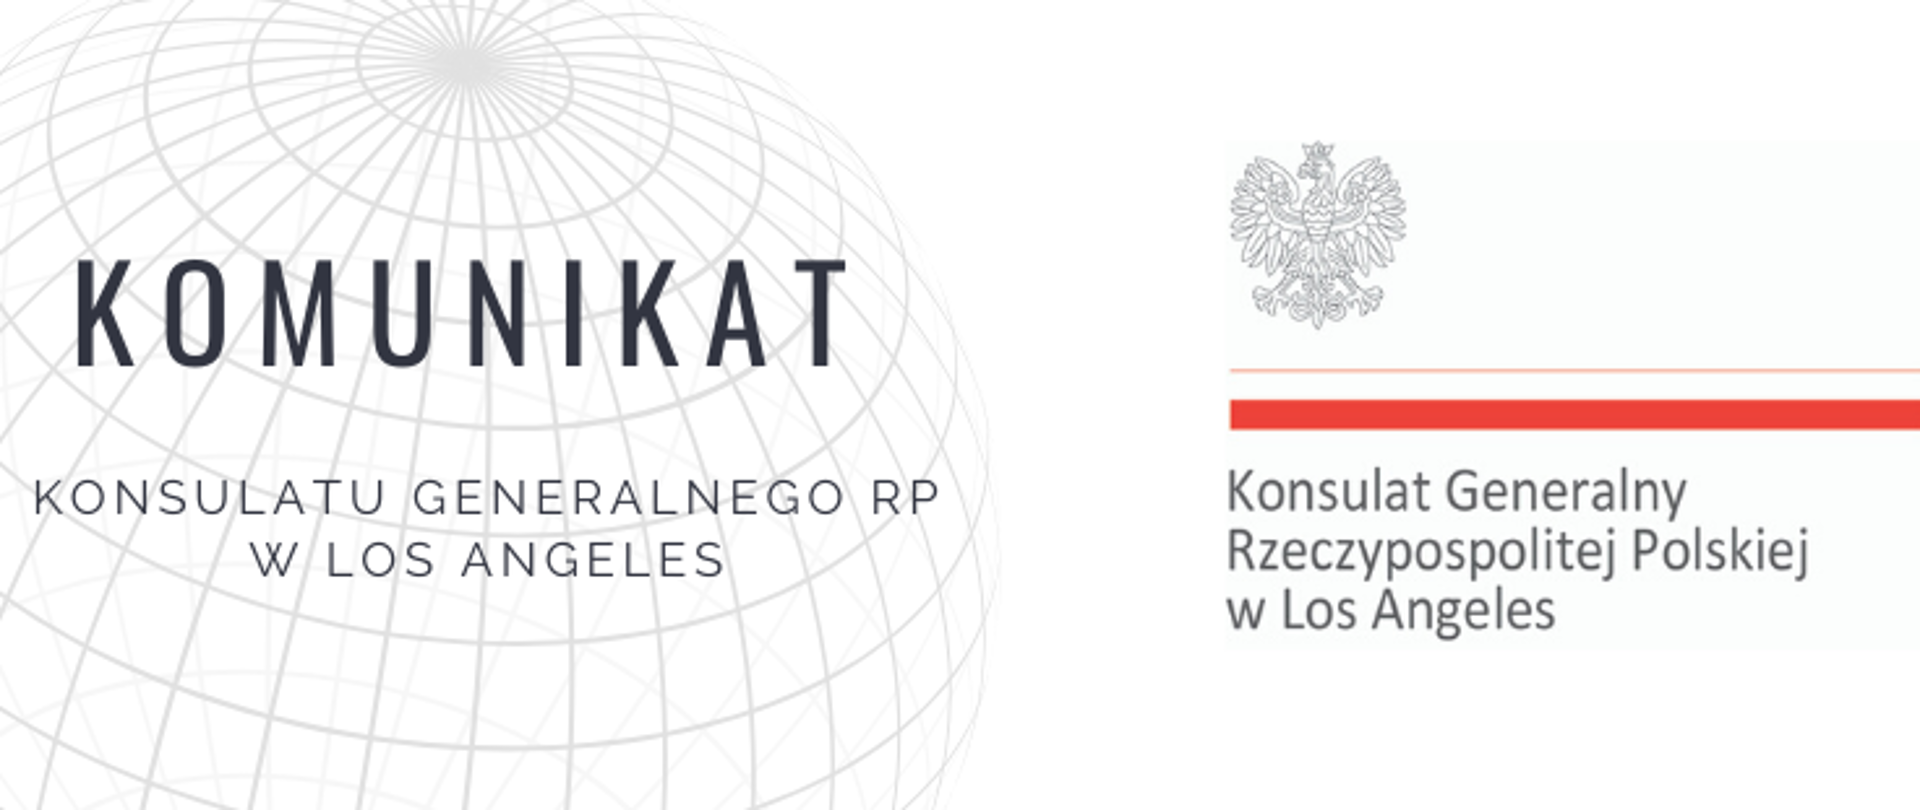 Grafika przedstawiająca logo konsulatu oraz treść: Komunikat Konsulatu Generalnego RP w Los Angeles.